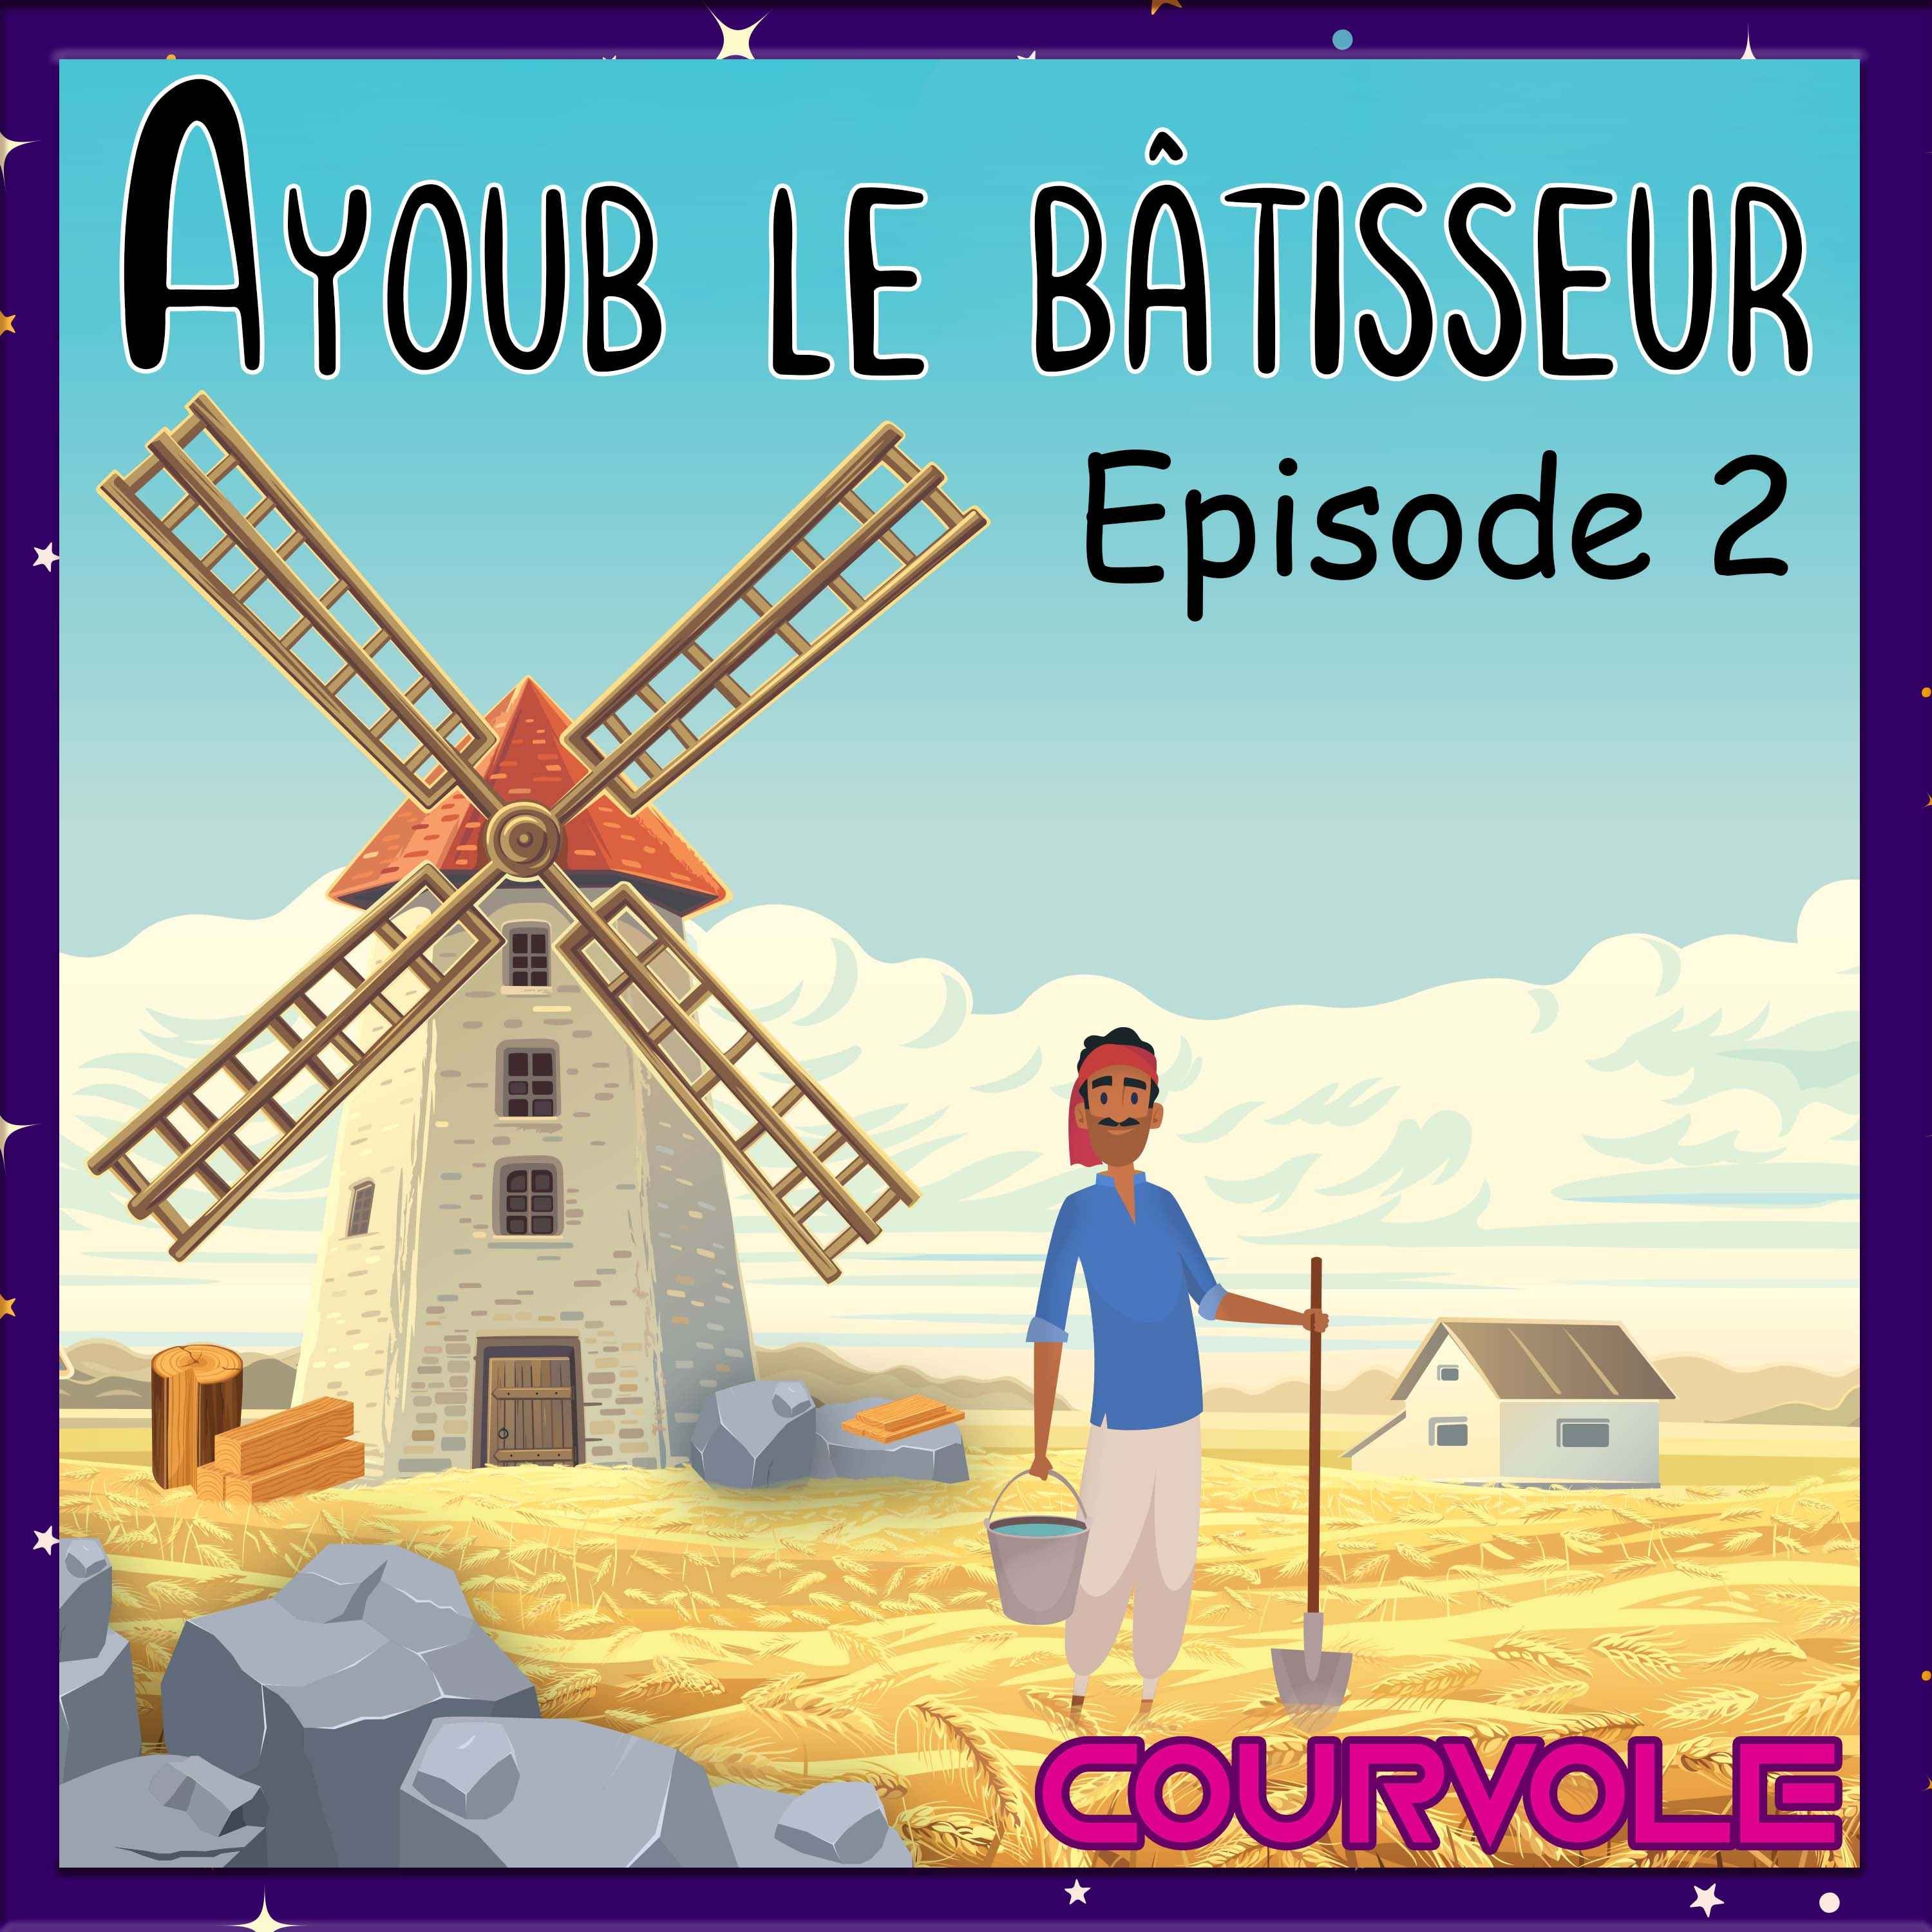 Ayoub le bâtisseur - Episode 2 Image